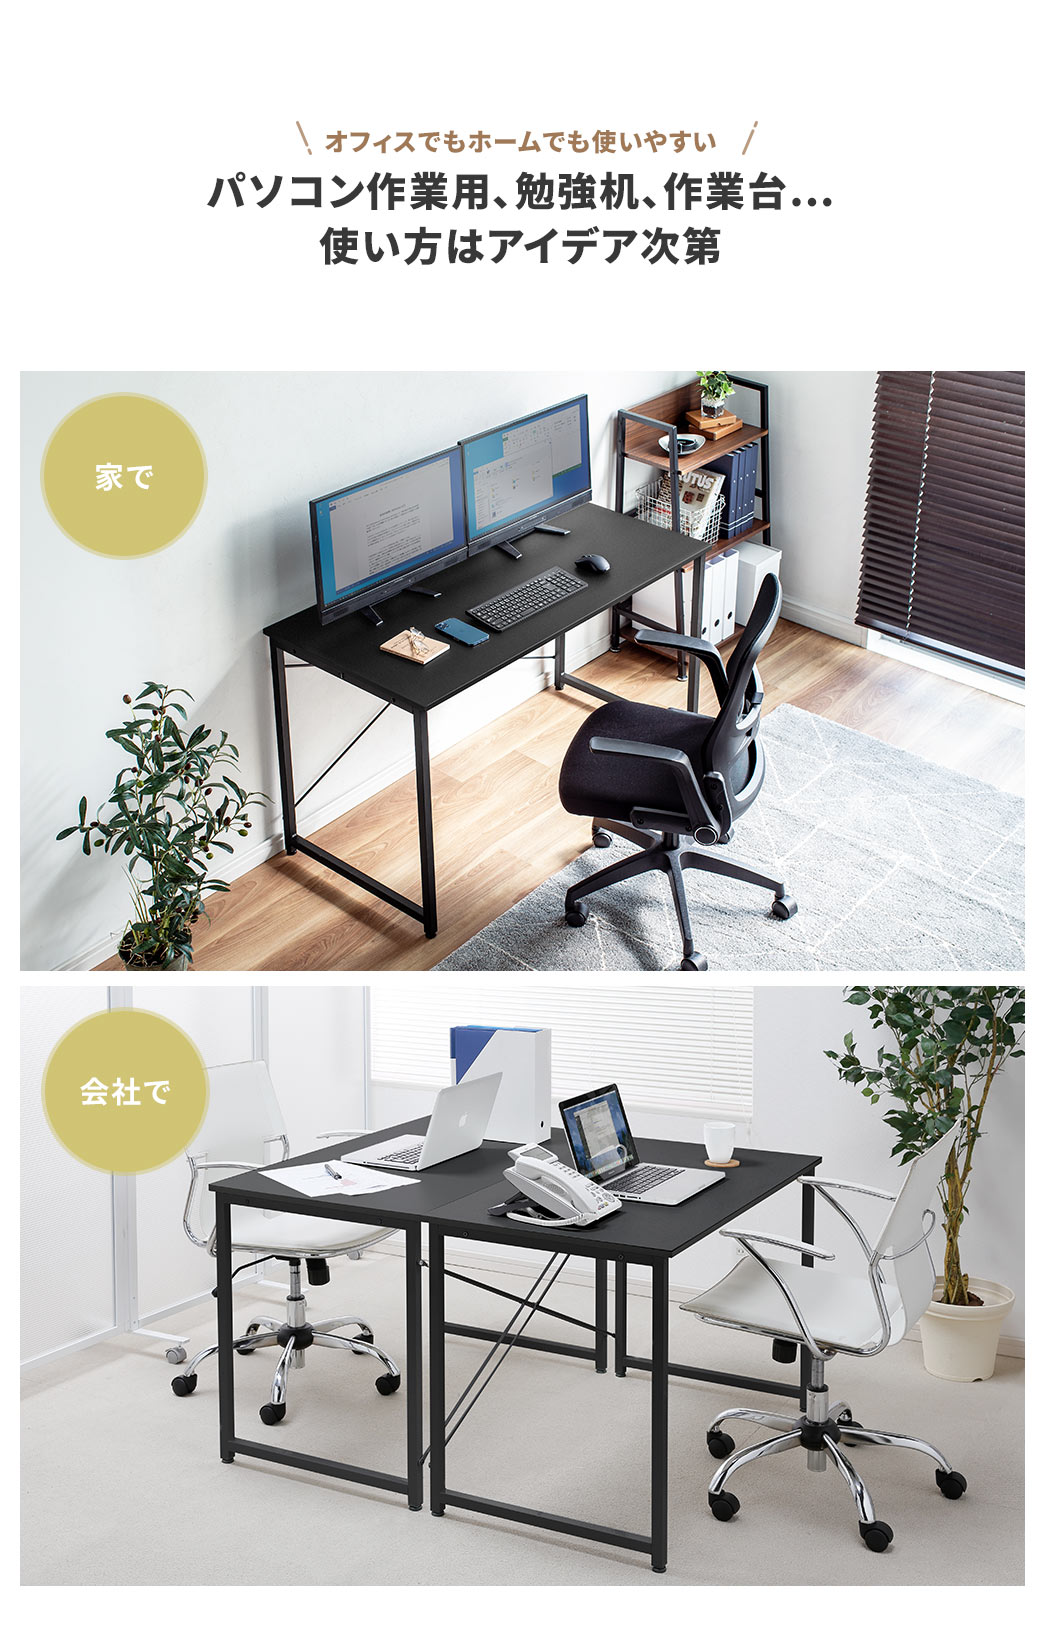 オフィスでもホームでも使いやすい パソコン作業用、勉強机、作業台... 使い方はアイデア次第